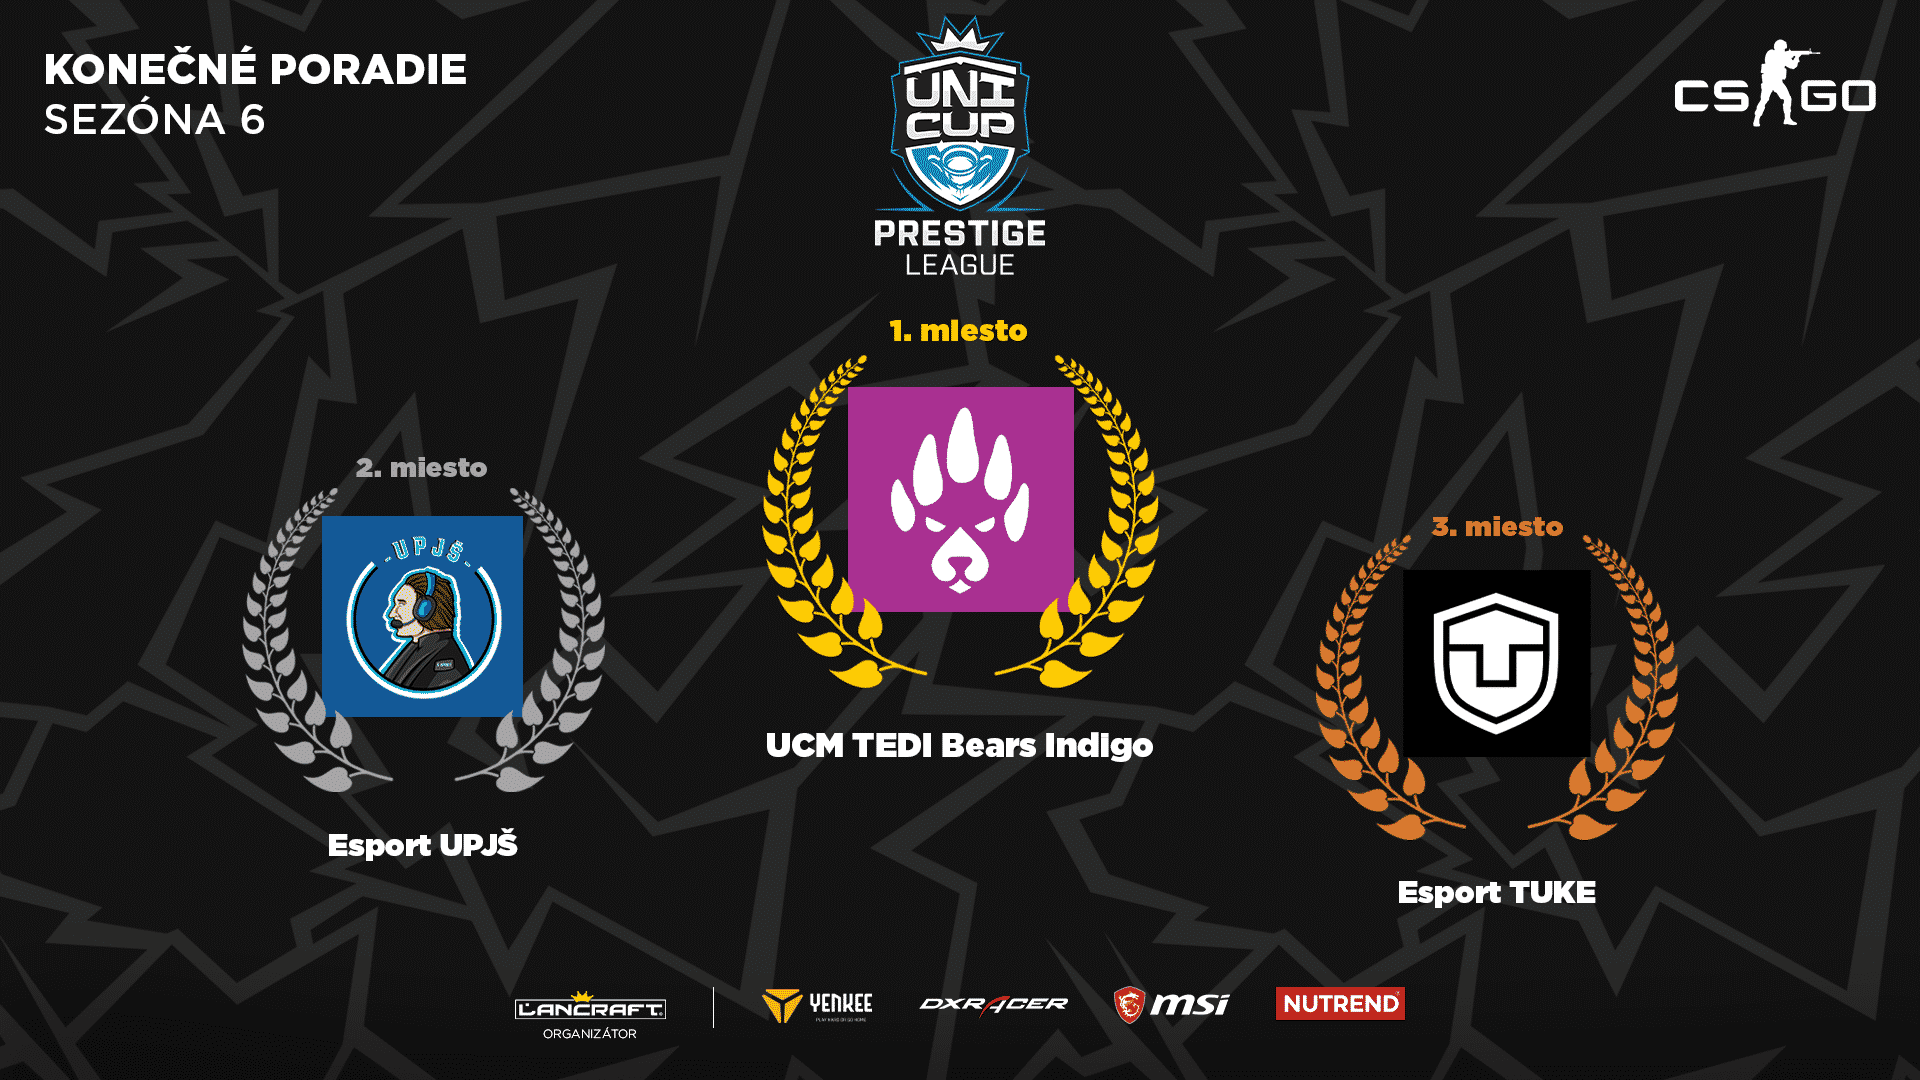 UniCup Prestige League CS:GO